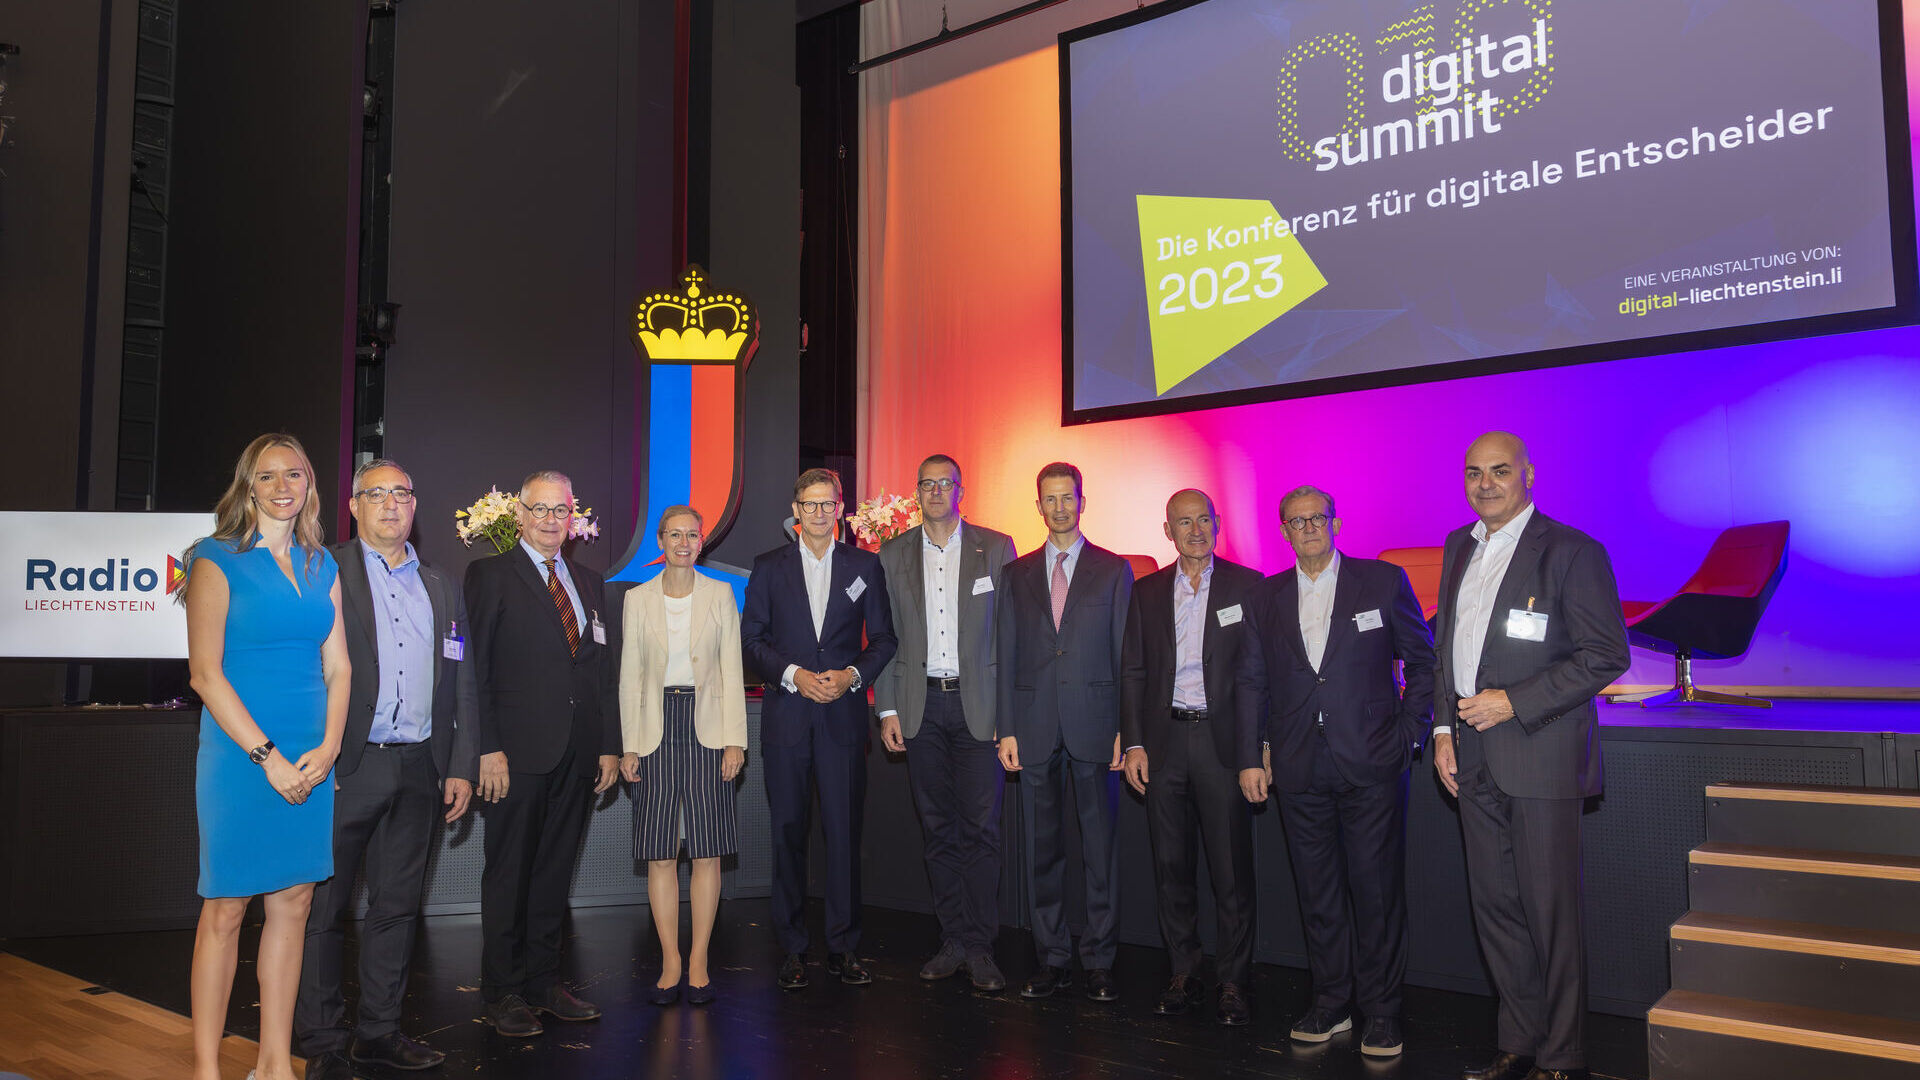 Digital Summit 2023: gli organizzatori e i relatori